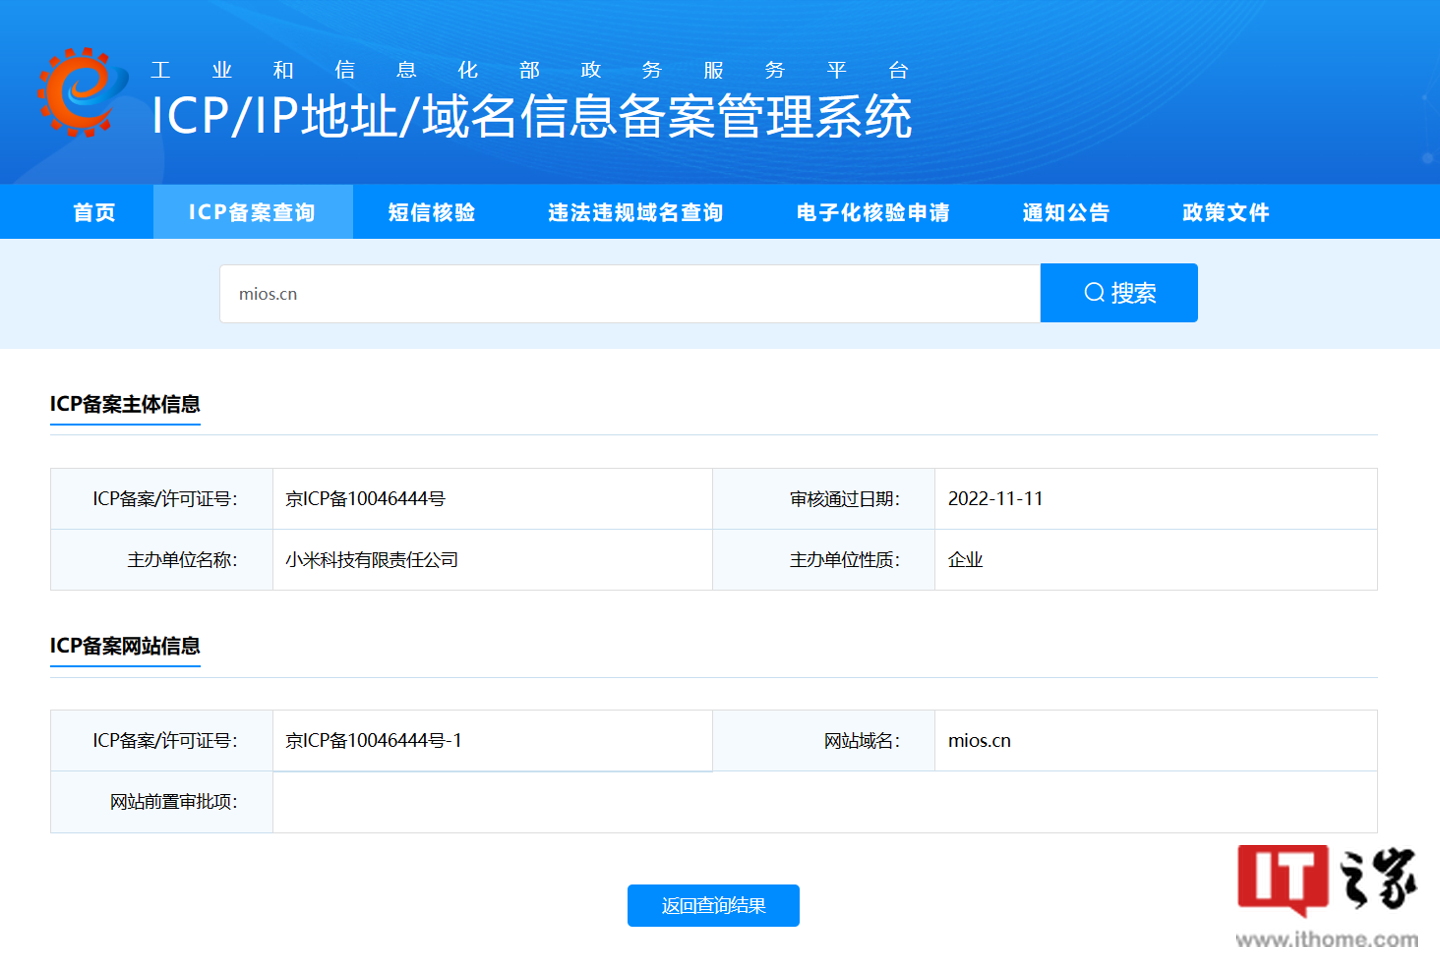 小米备案 mios.cn 网站域名，消息称将打通“新终端”